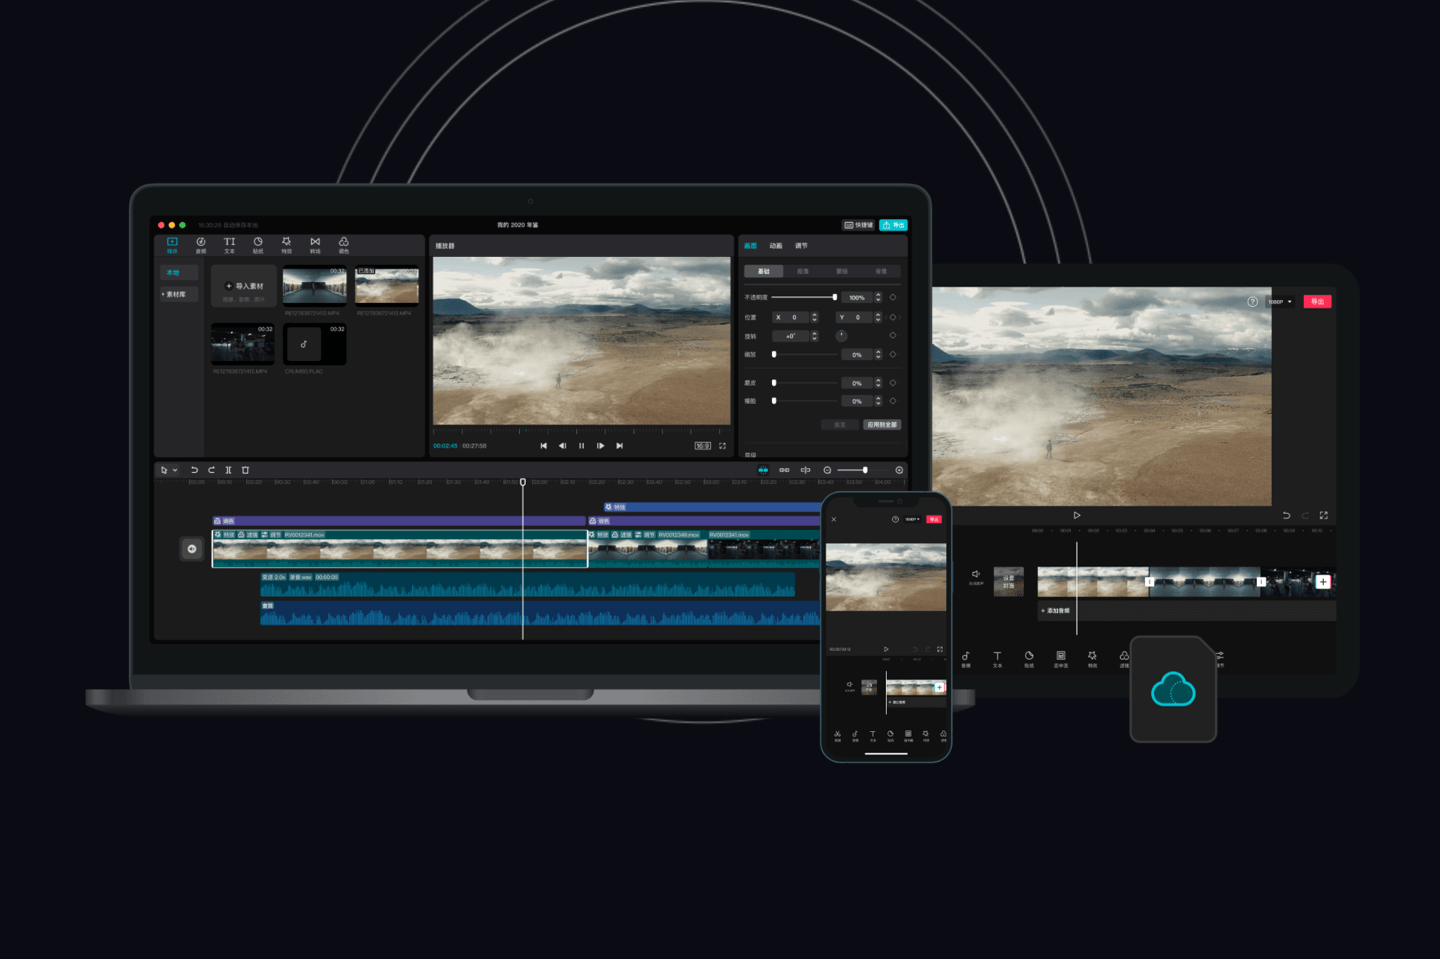 剪映专业版4.2.0 Beta版发布：支持并行场景编码 视频导出速度可提升高达67%